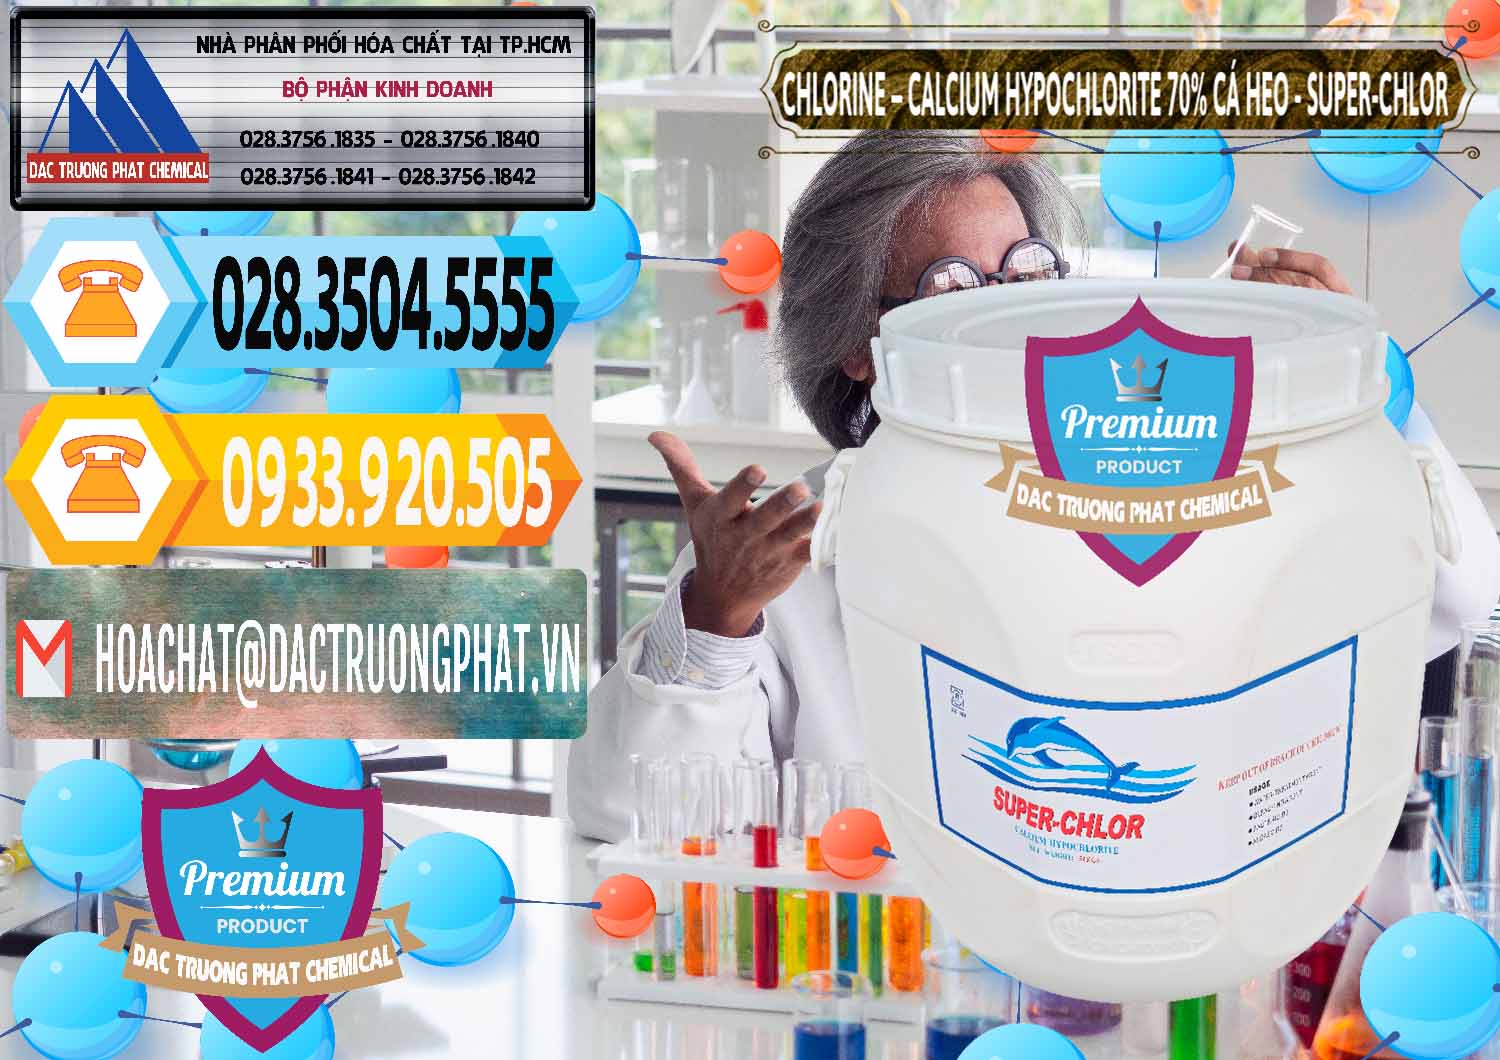 Công ty chuyên cung ứng ( bán ) Clorin - Chlorine Cá Heo 70% Super Chlor Trung Quốc China - 0058 - Công ty kinh doanh ( phân phối ) hóa chất tại TP.HCM - hoachattayrua.net